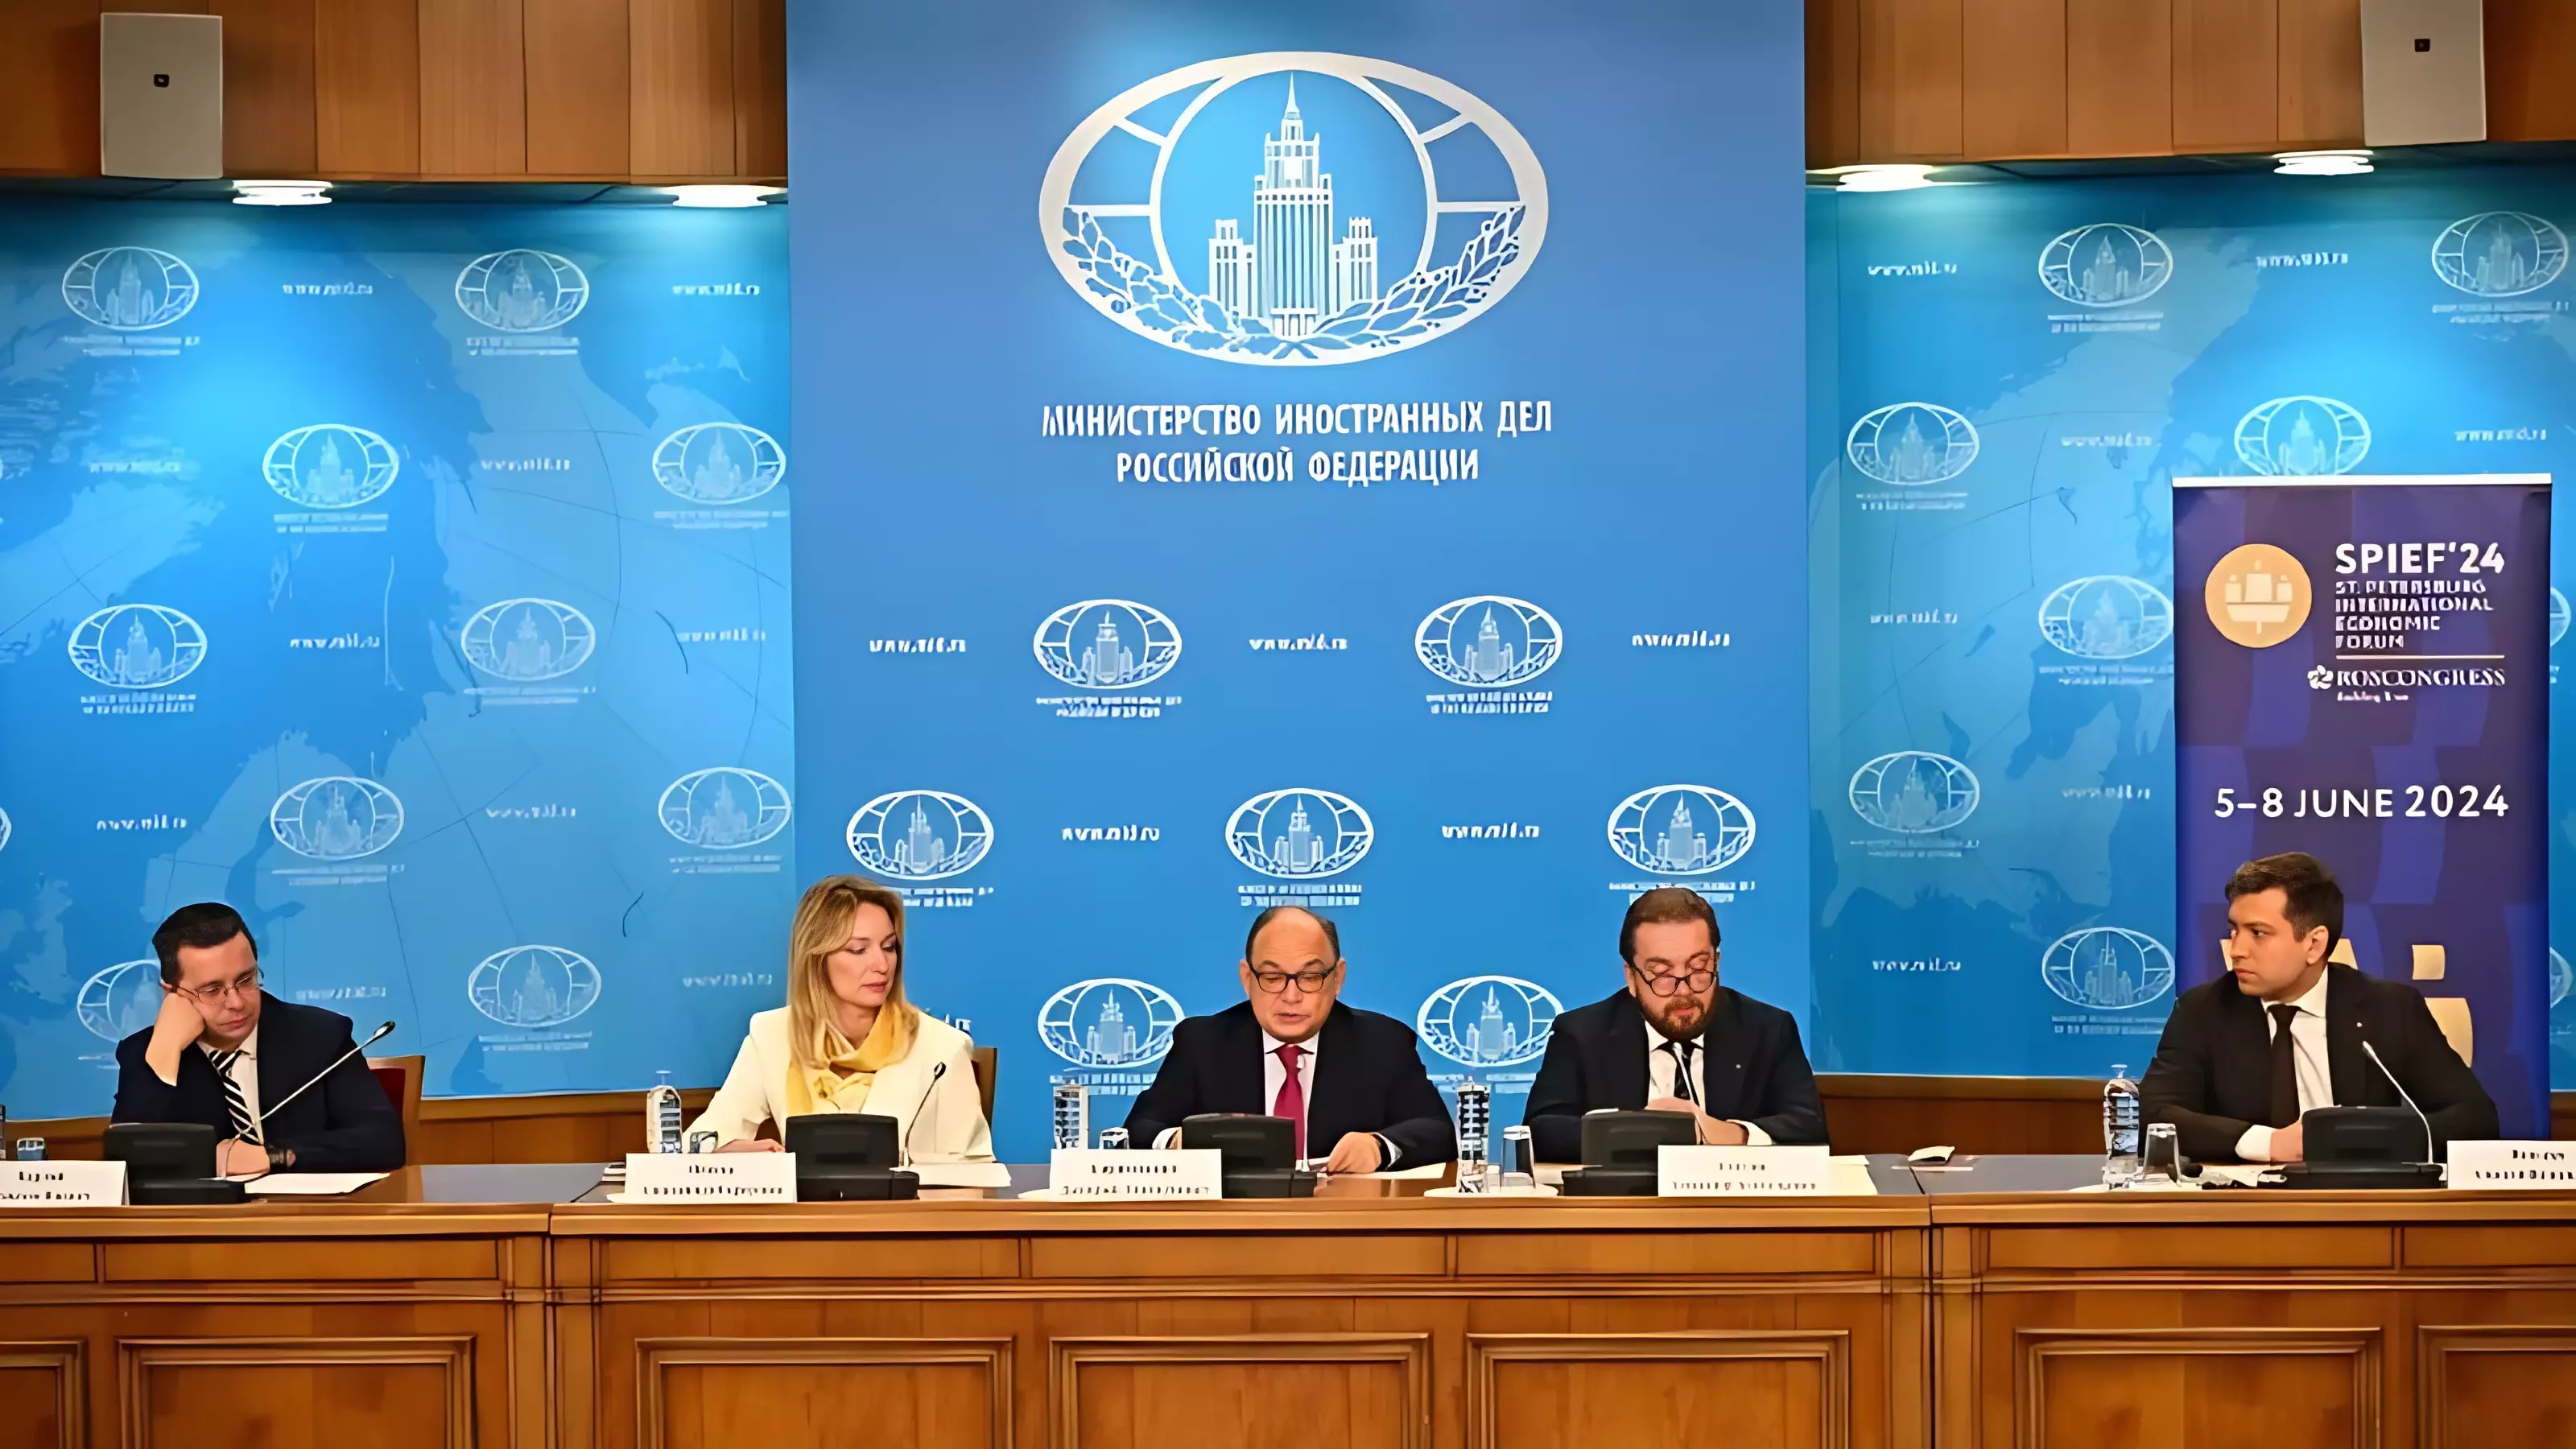 В российском МИД прошла презентация ПМЭФ-2024 для иностранных послов